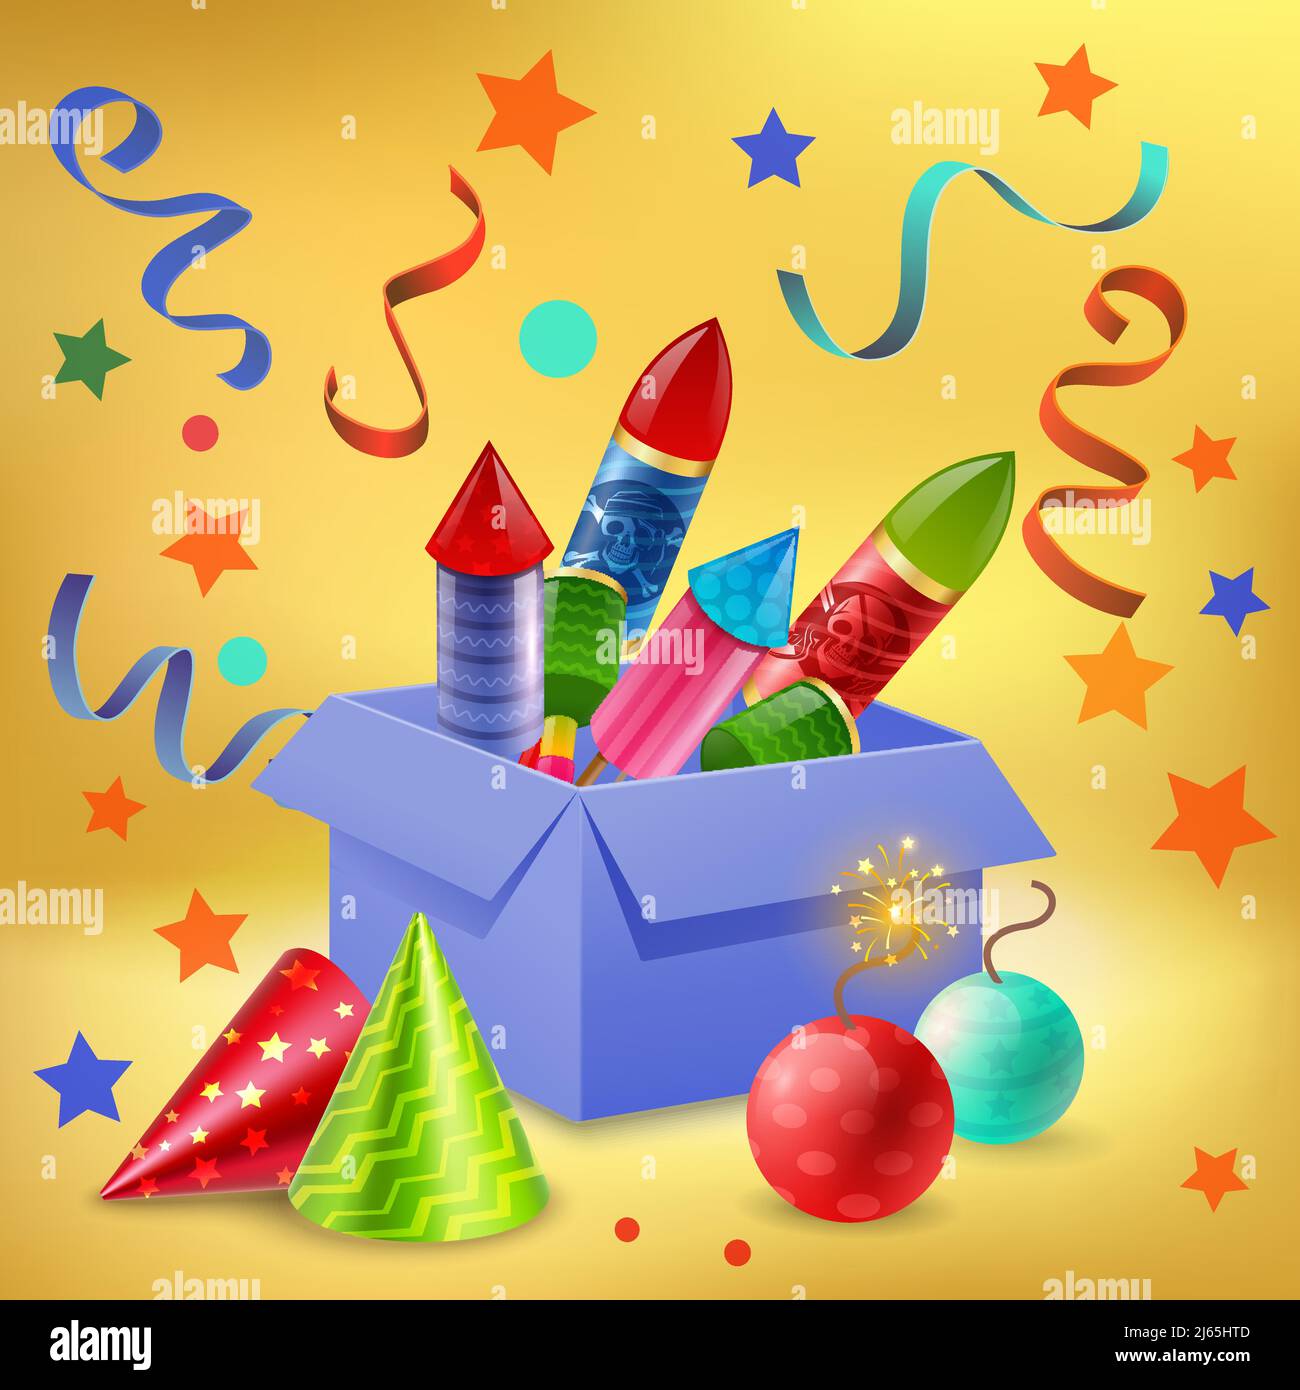 Feuerwerk Zusammensetzung der realistischen Geschenkbox mit Feuerwerkskörper Konfetti gefüllt Sparkler Bälle und Party Hüte Vektor-Illustration Stock Vektor